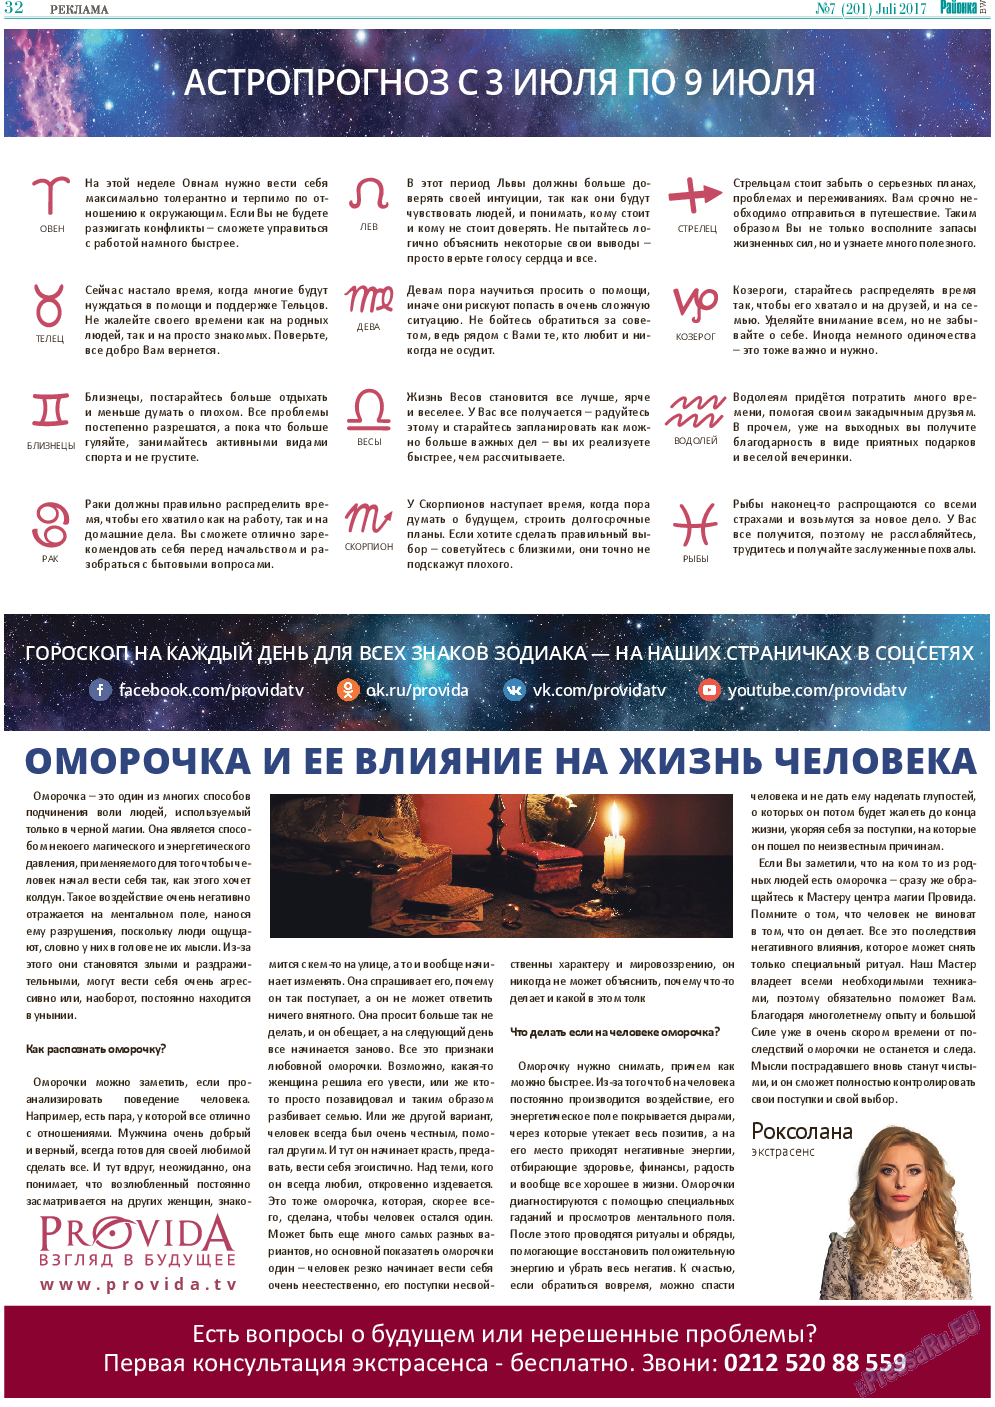 Районка-Süd-West, газета. 2017 №7 стр.32